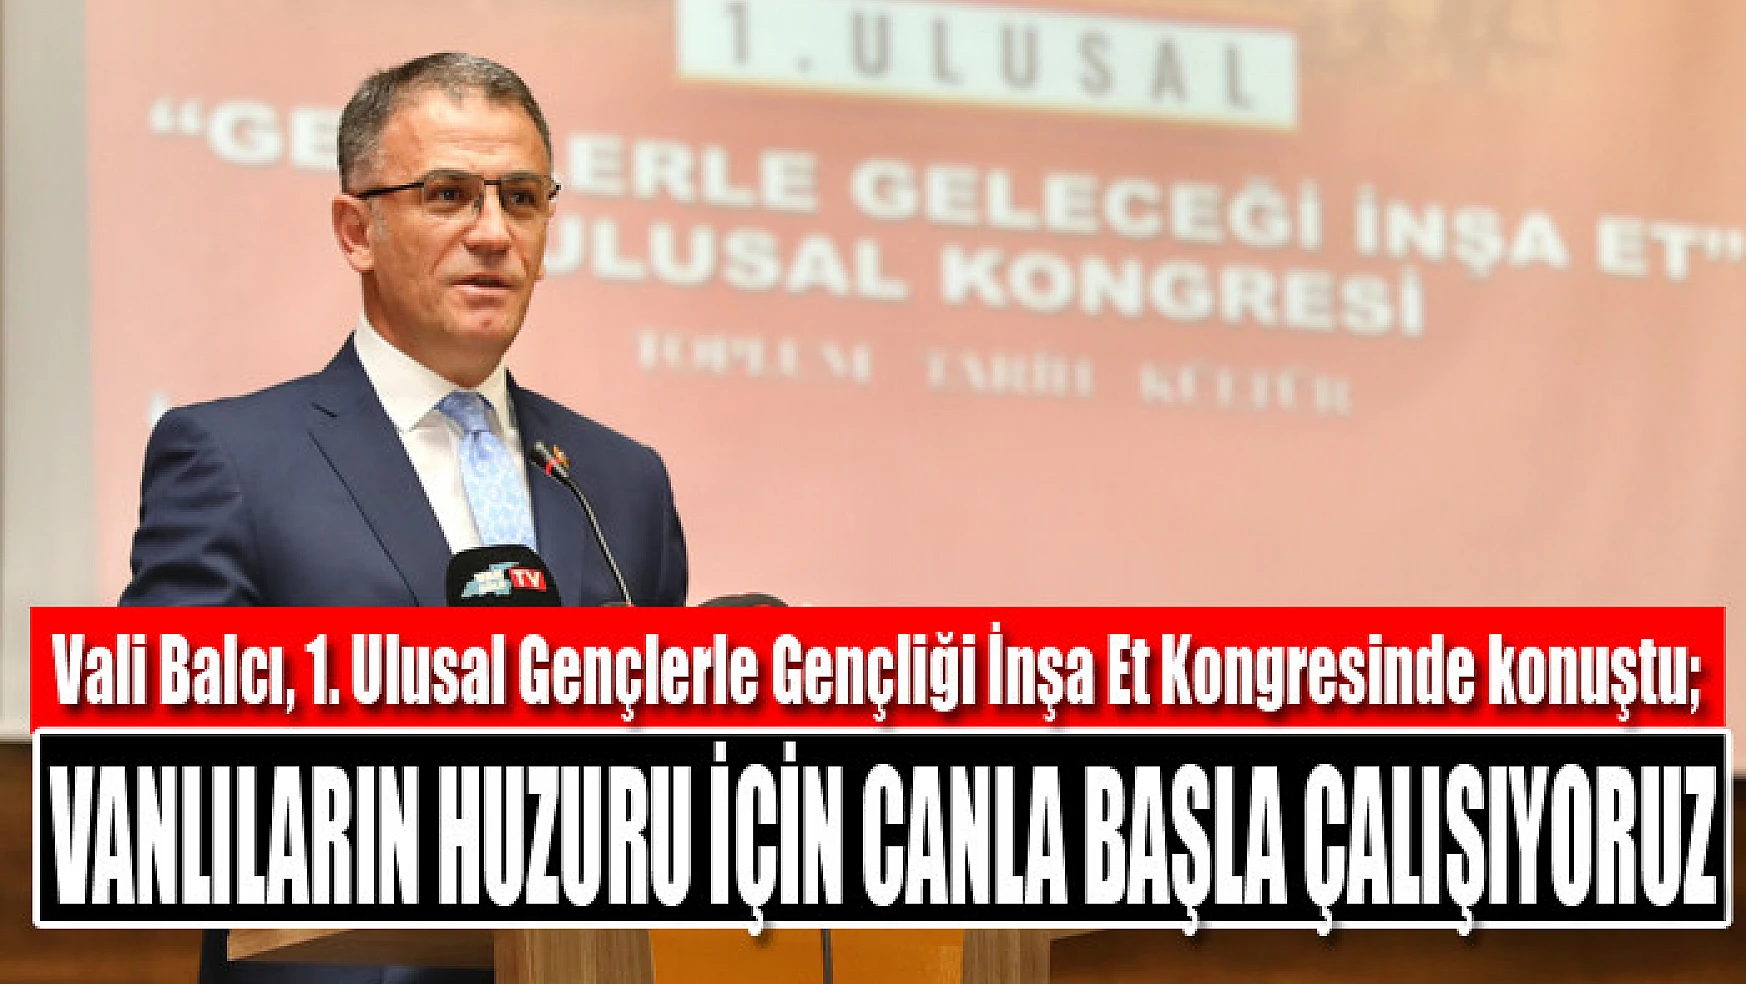 Vali Balcı: Vanlıların huzuru için canla başla çalışıyoruz